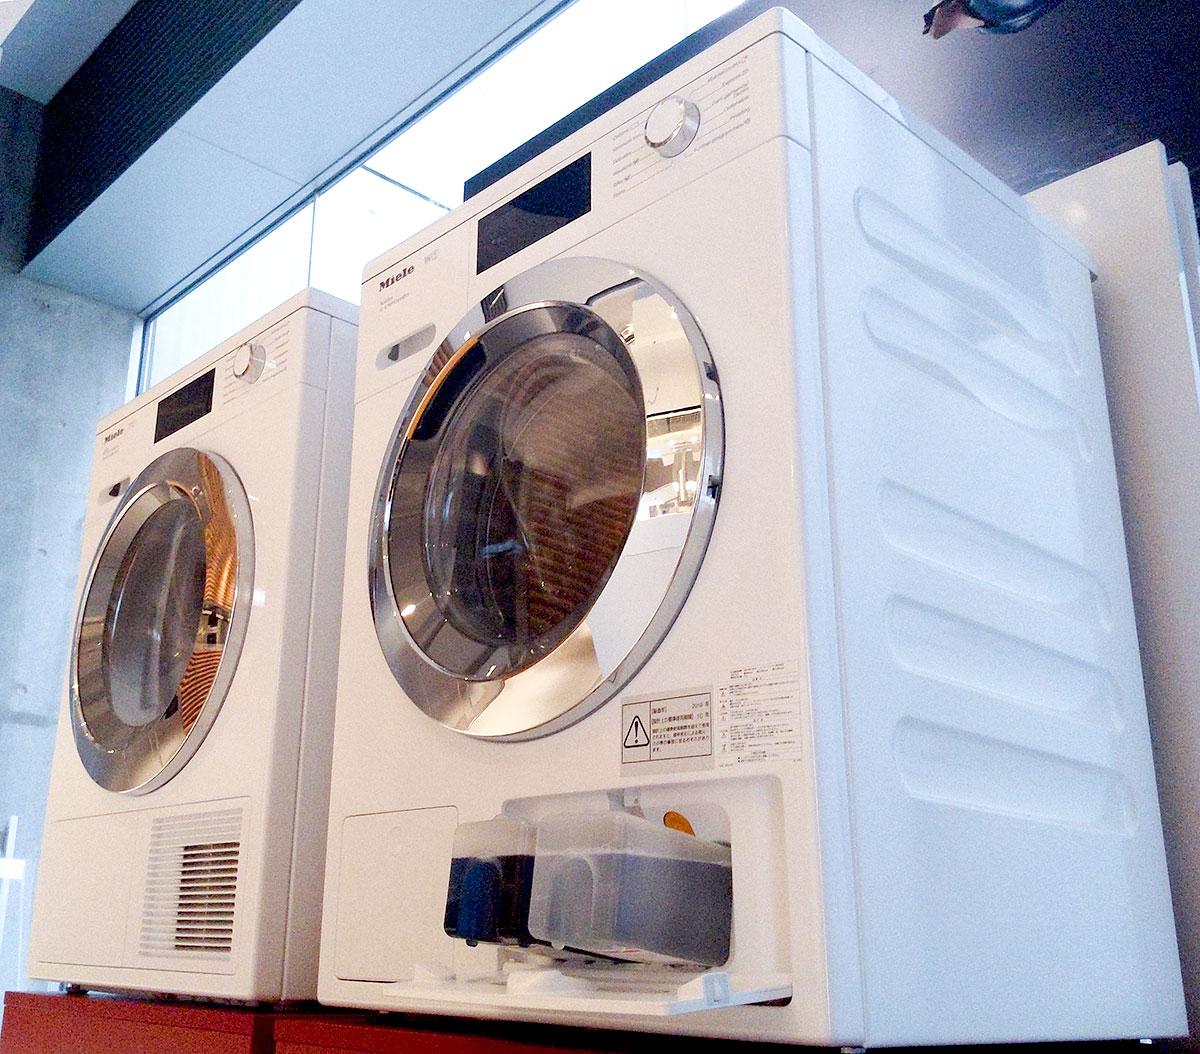 洗濯物を絶対殺菌するマシン。ミーレの洗濯機｢W1｣が熱い（物理的に 